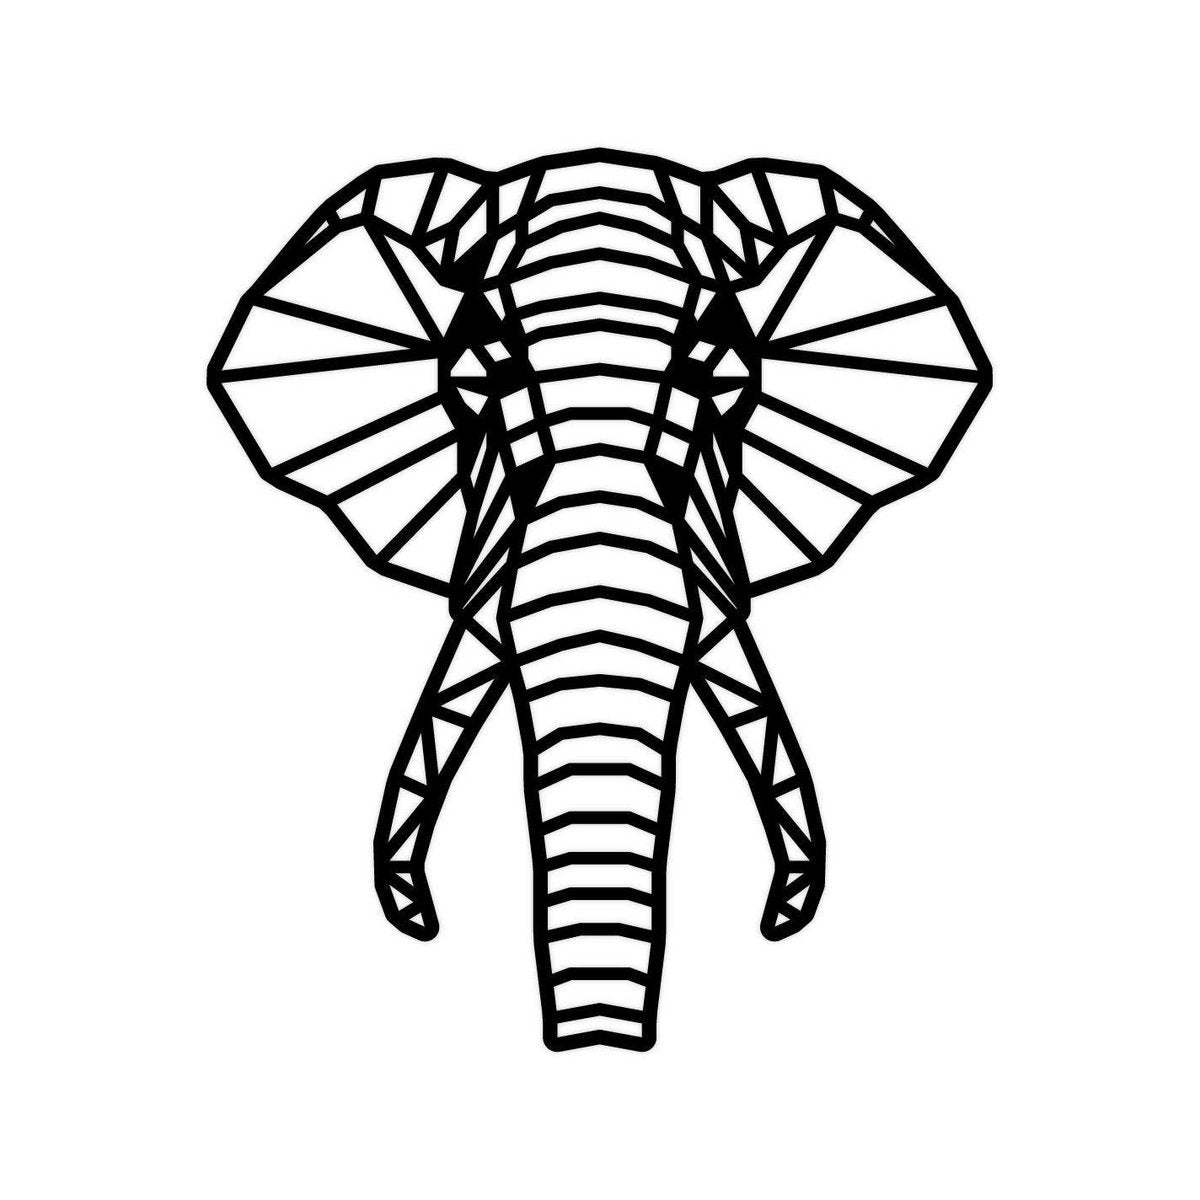 Geometrische olifant